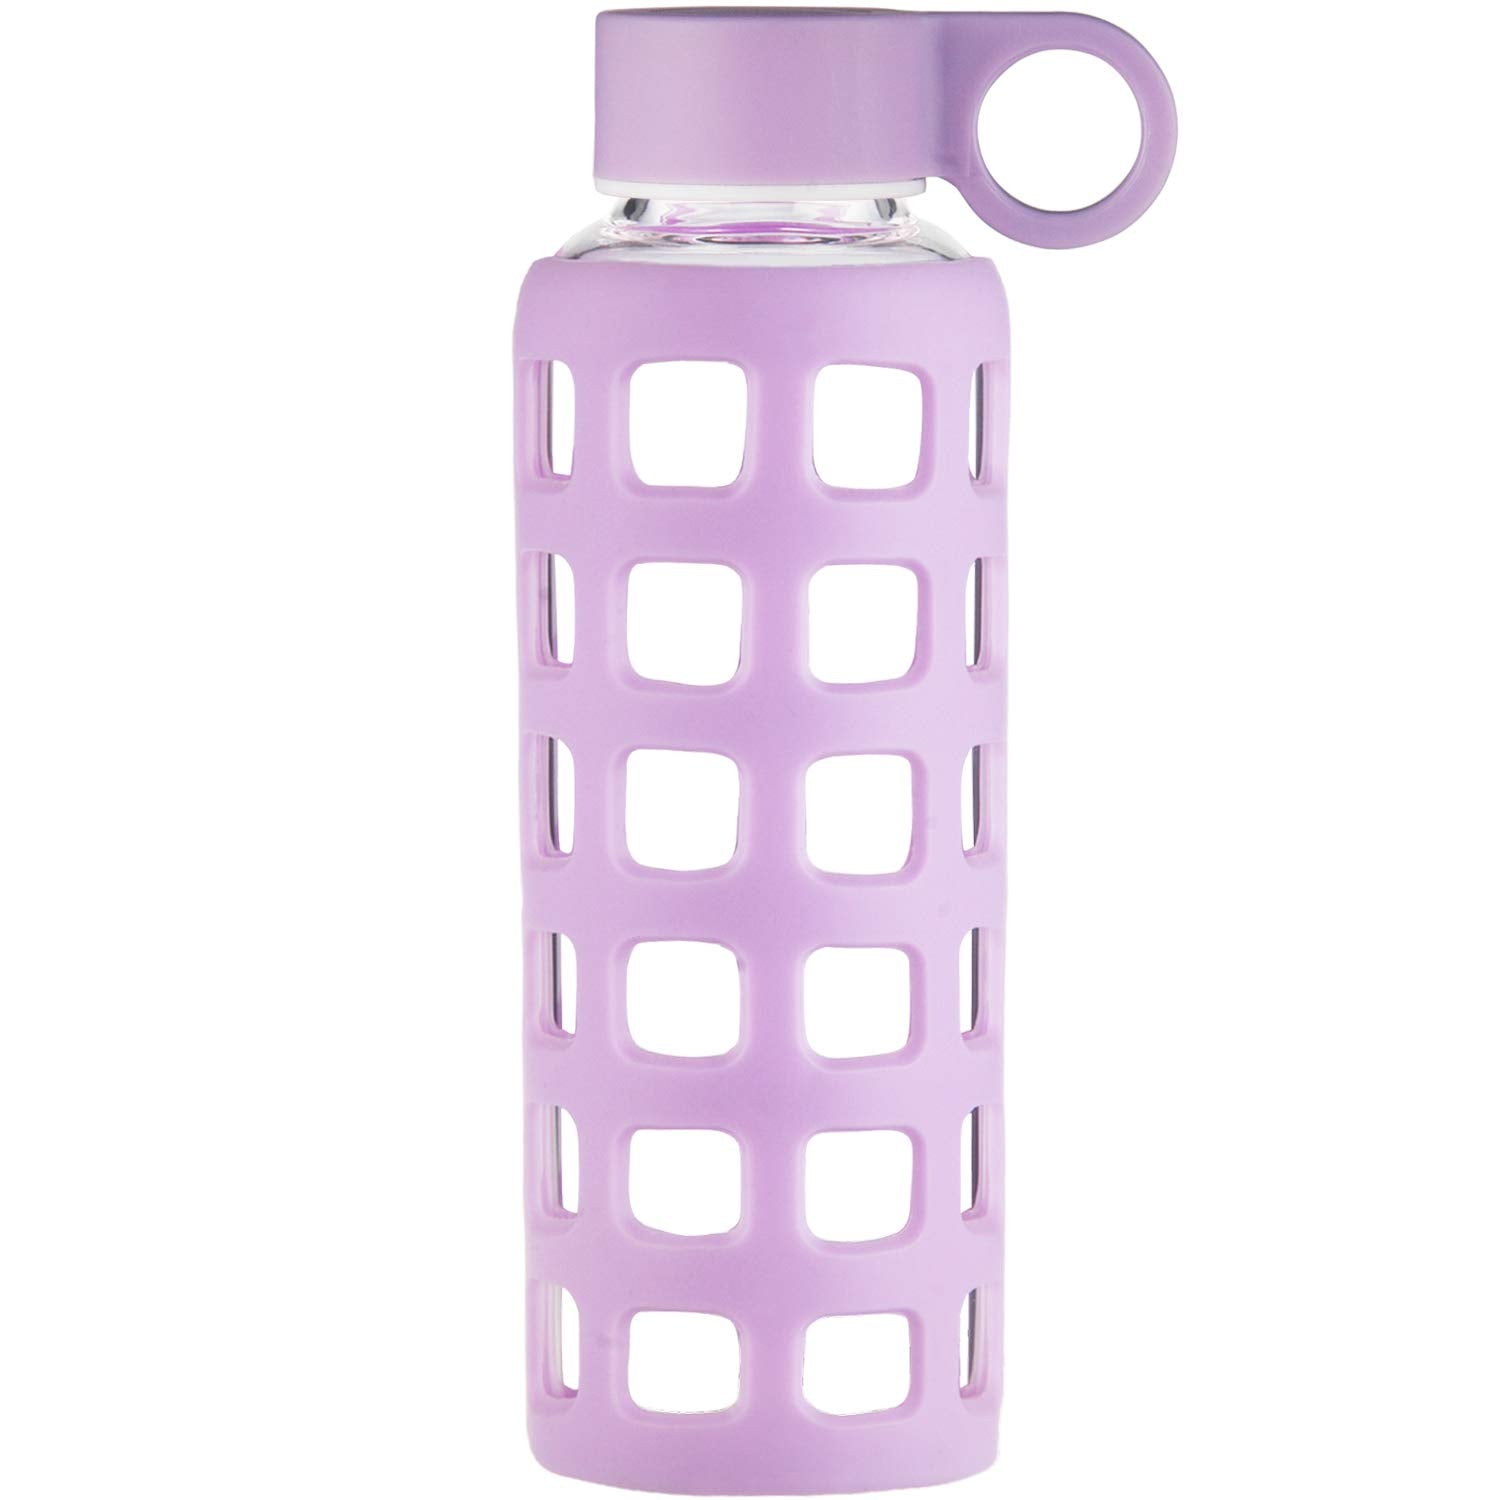 ORIGIN Borosilicate Glass Water Bottle with Fun Square Silicone